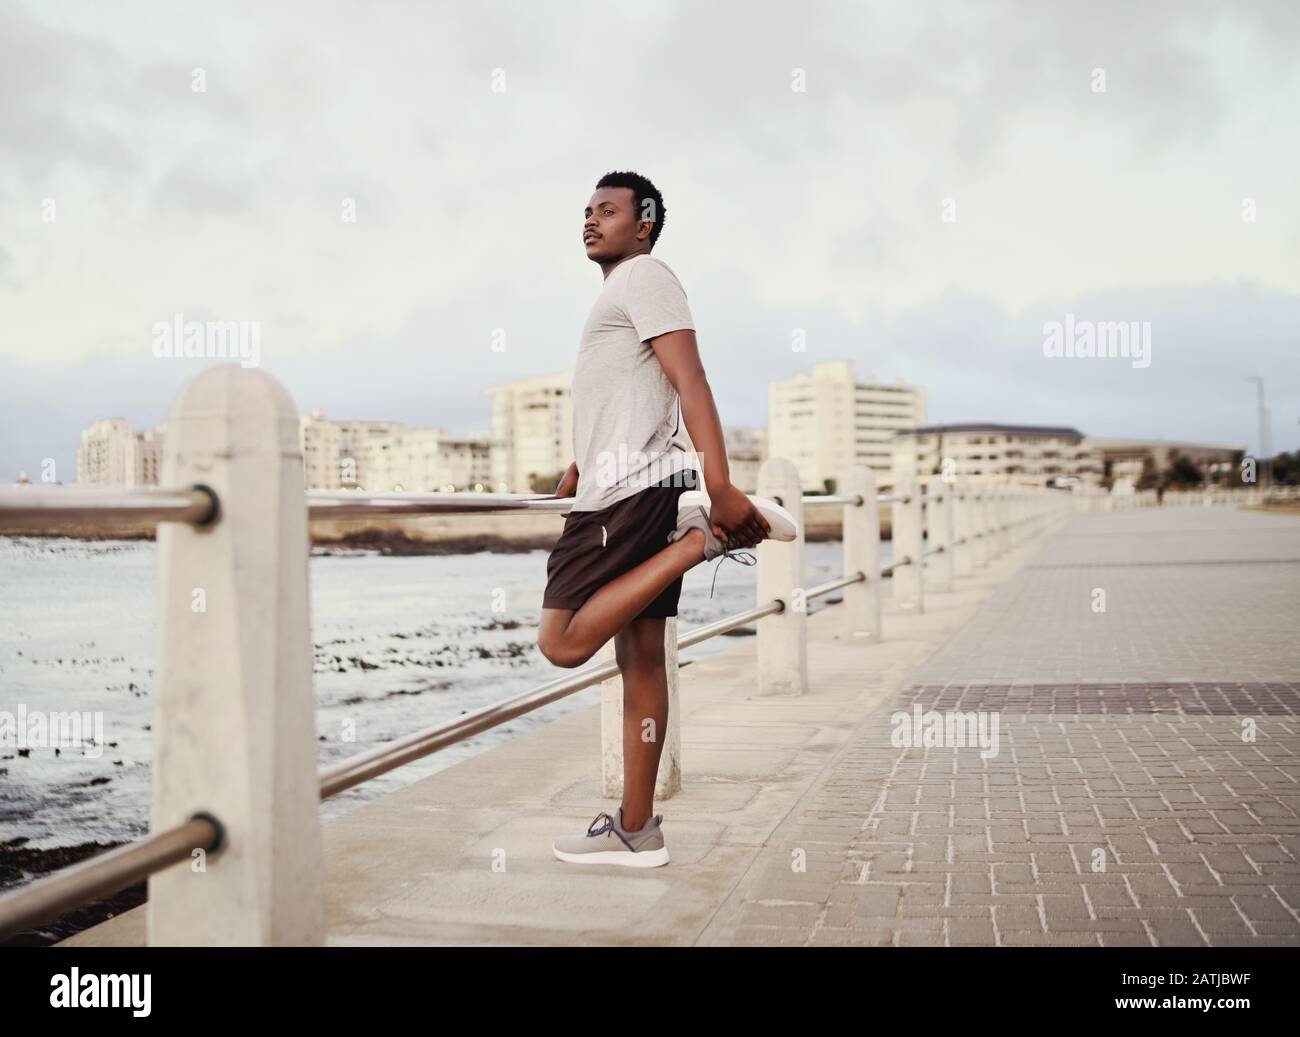 Seitenansicht eines jungen männlichen Sportlers, der seine Beine streckt, der neben dem Geländer an der Strandpromenade steht Stockfoto